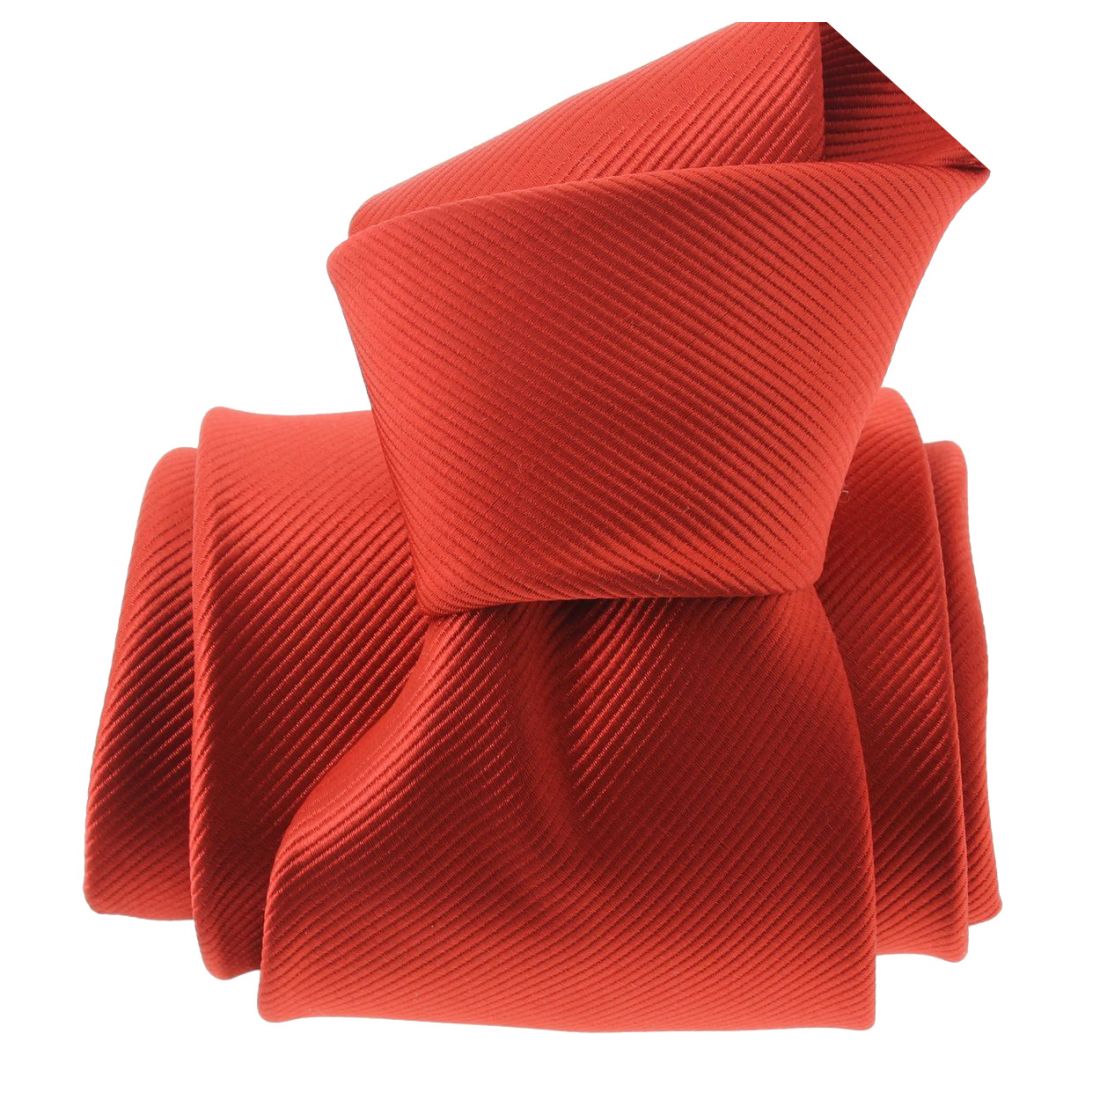 La Cravate Rouge, le site des accessoires originaux - Adresses  Incontournables